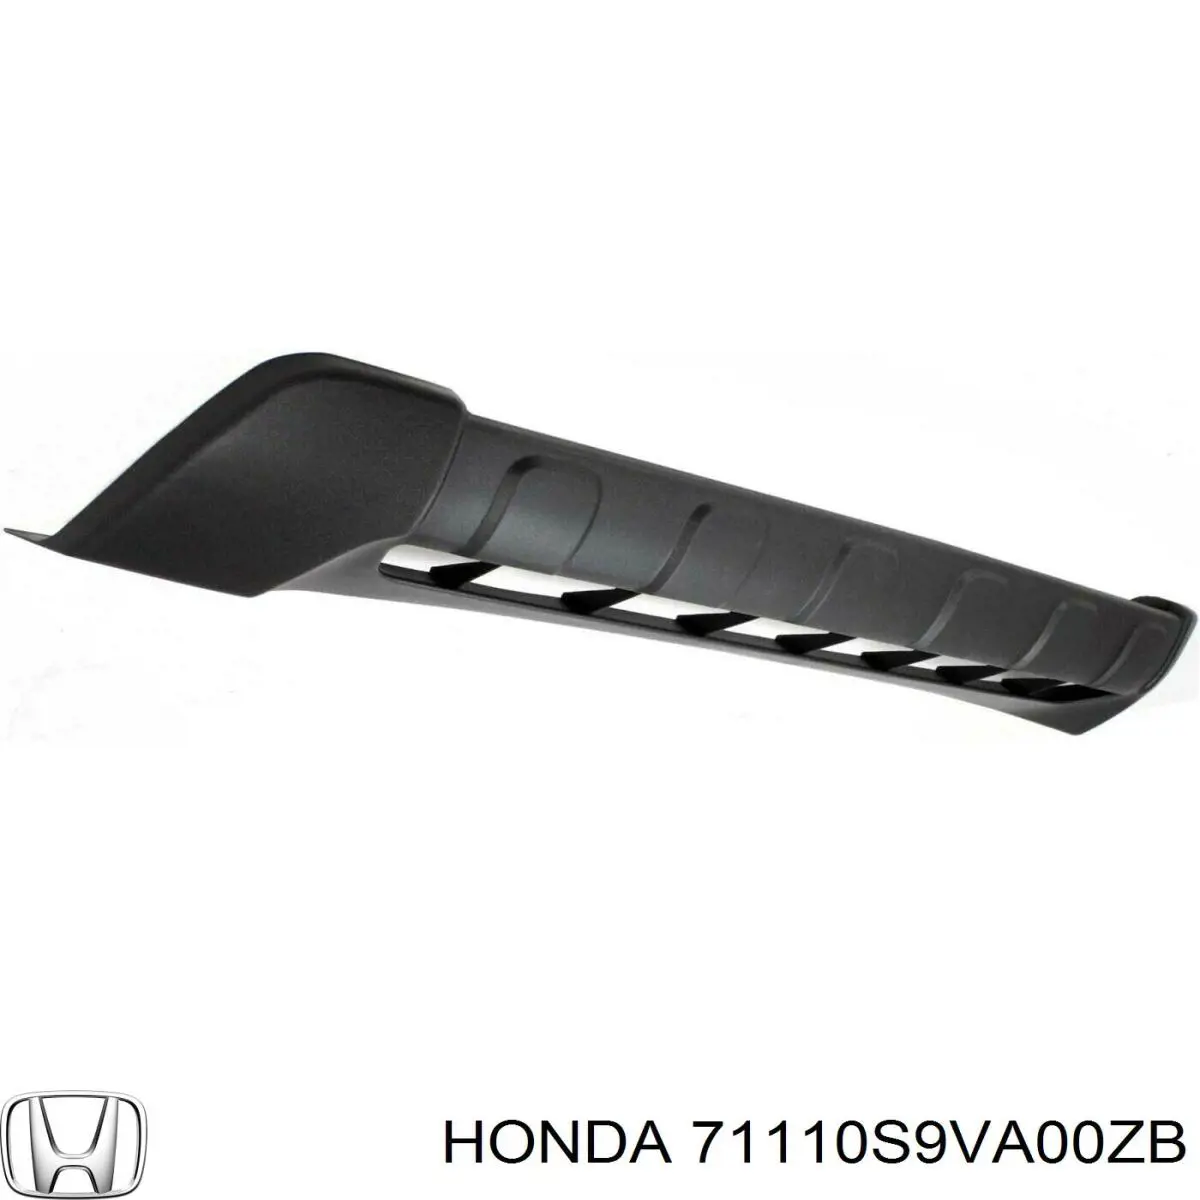 Listón embellecedor/protector, parachoques delantero central para Honda Pilot 